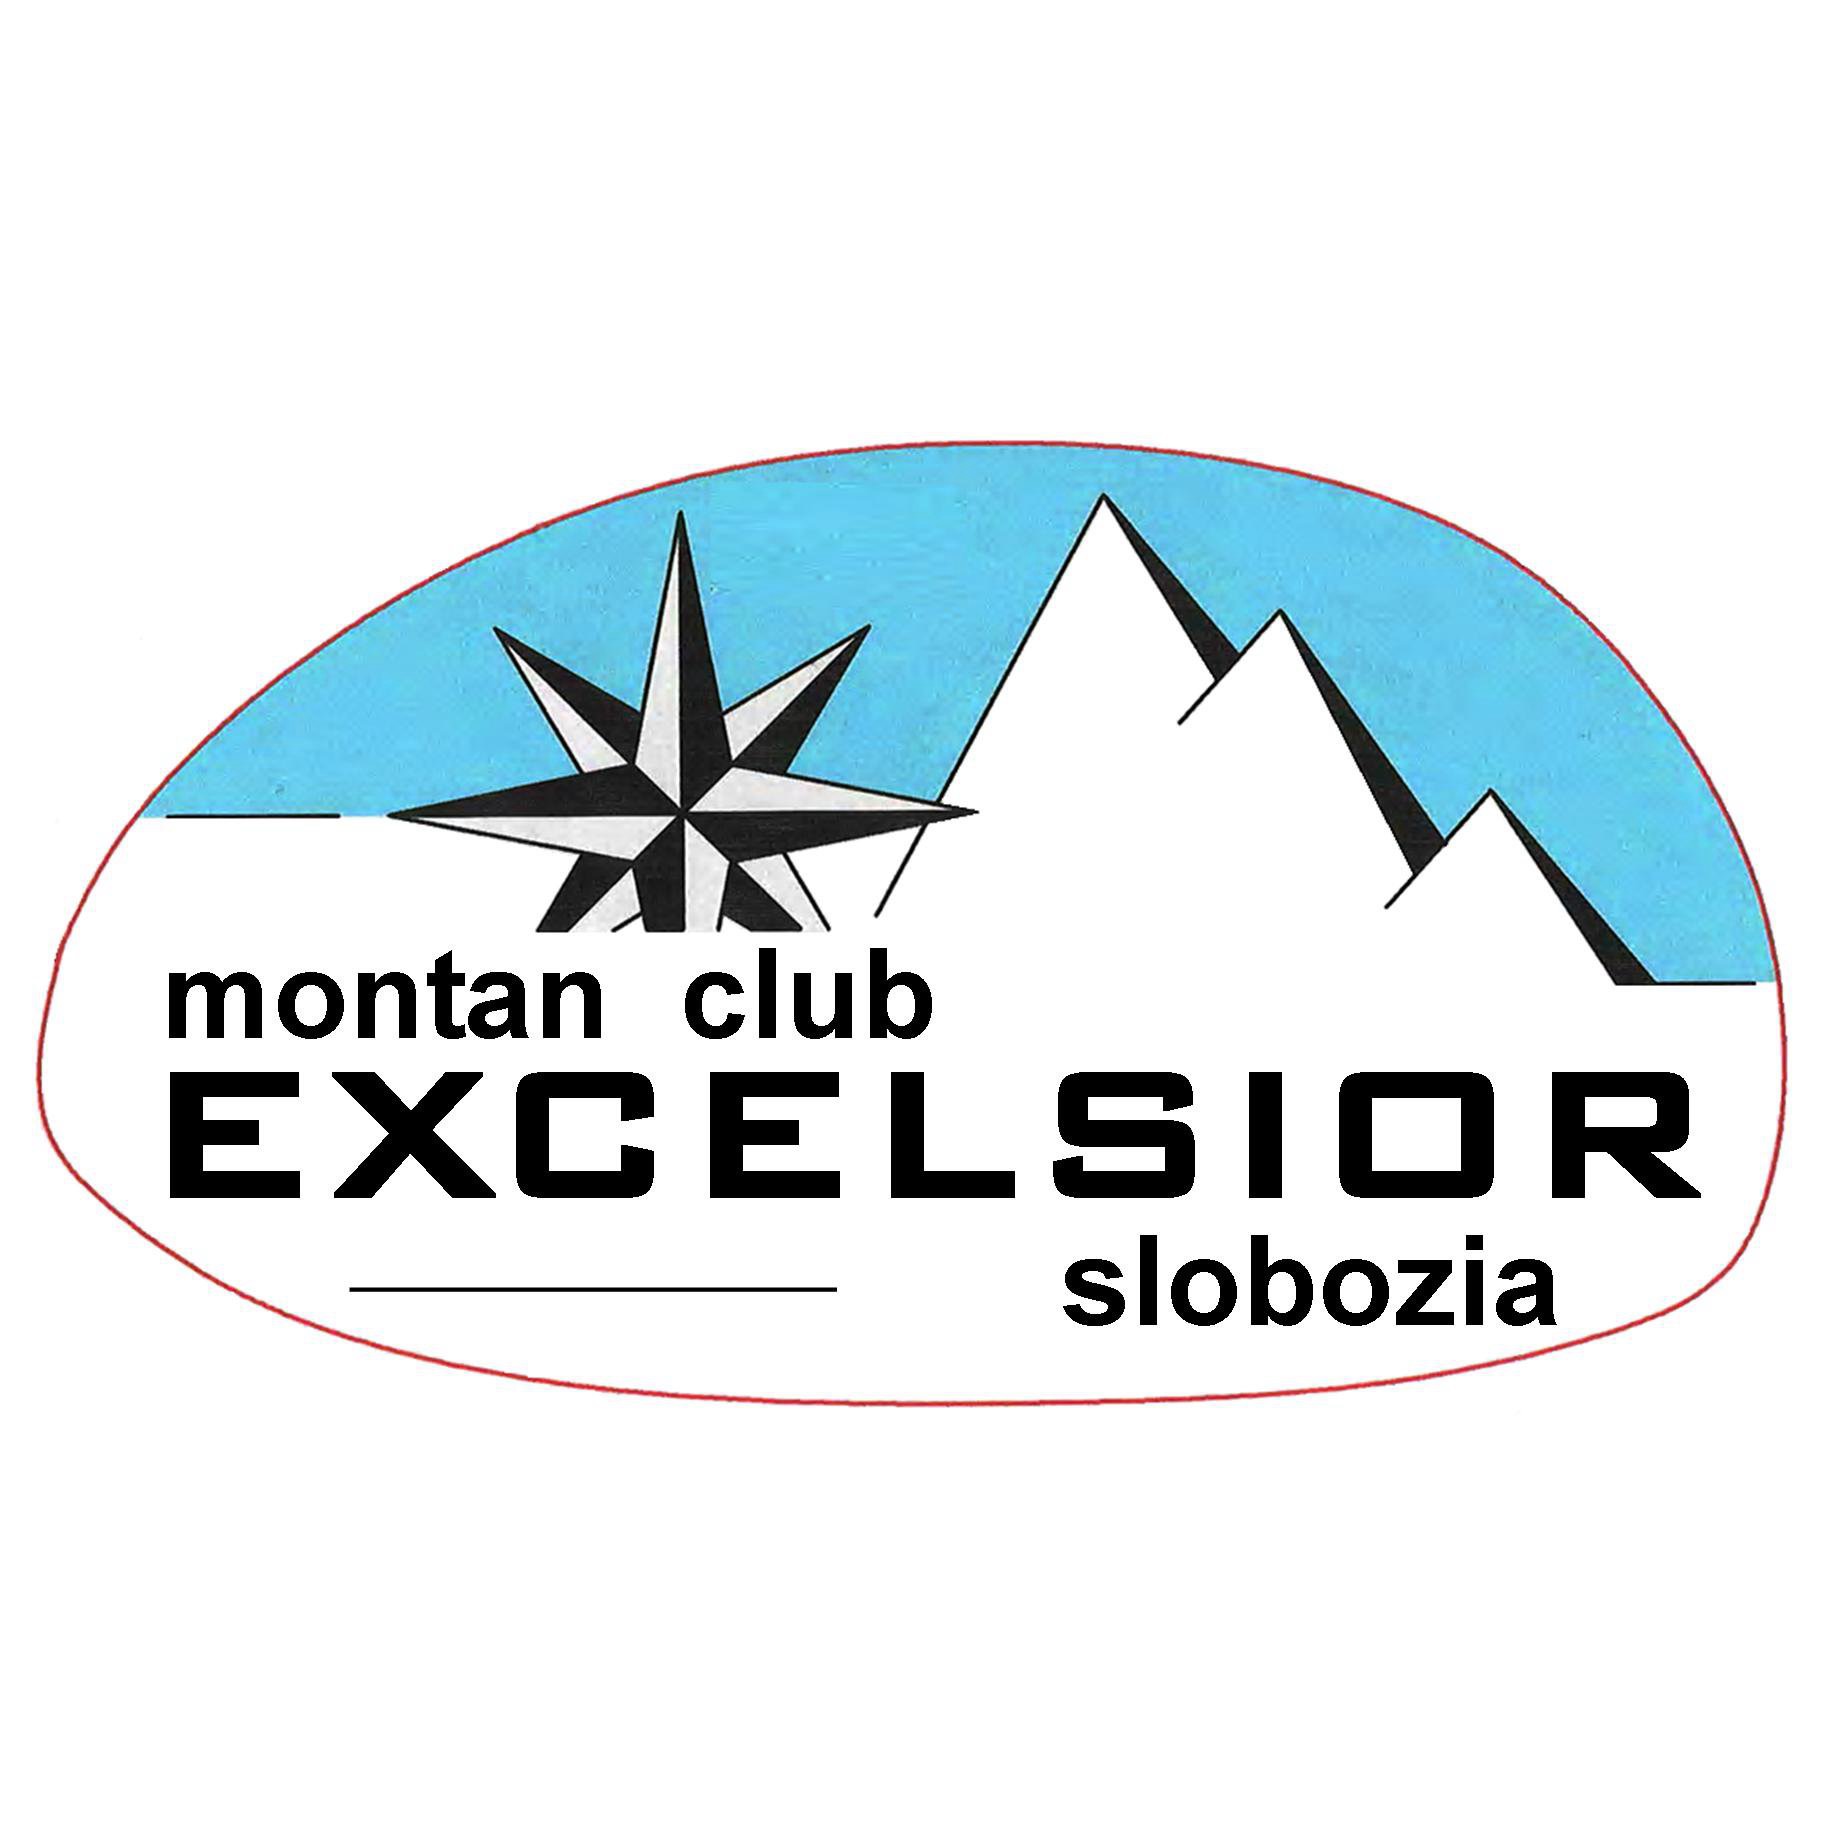 Montan Club Excelsior Slobozia logo